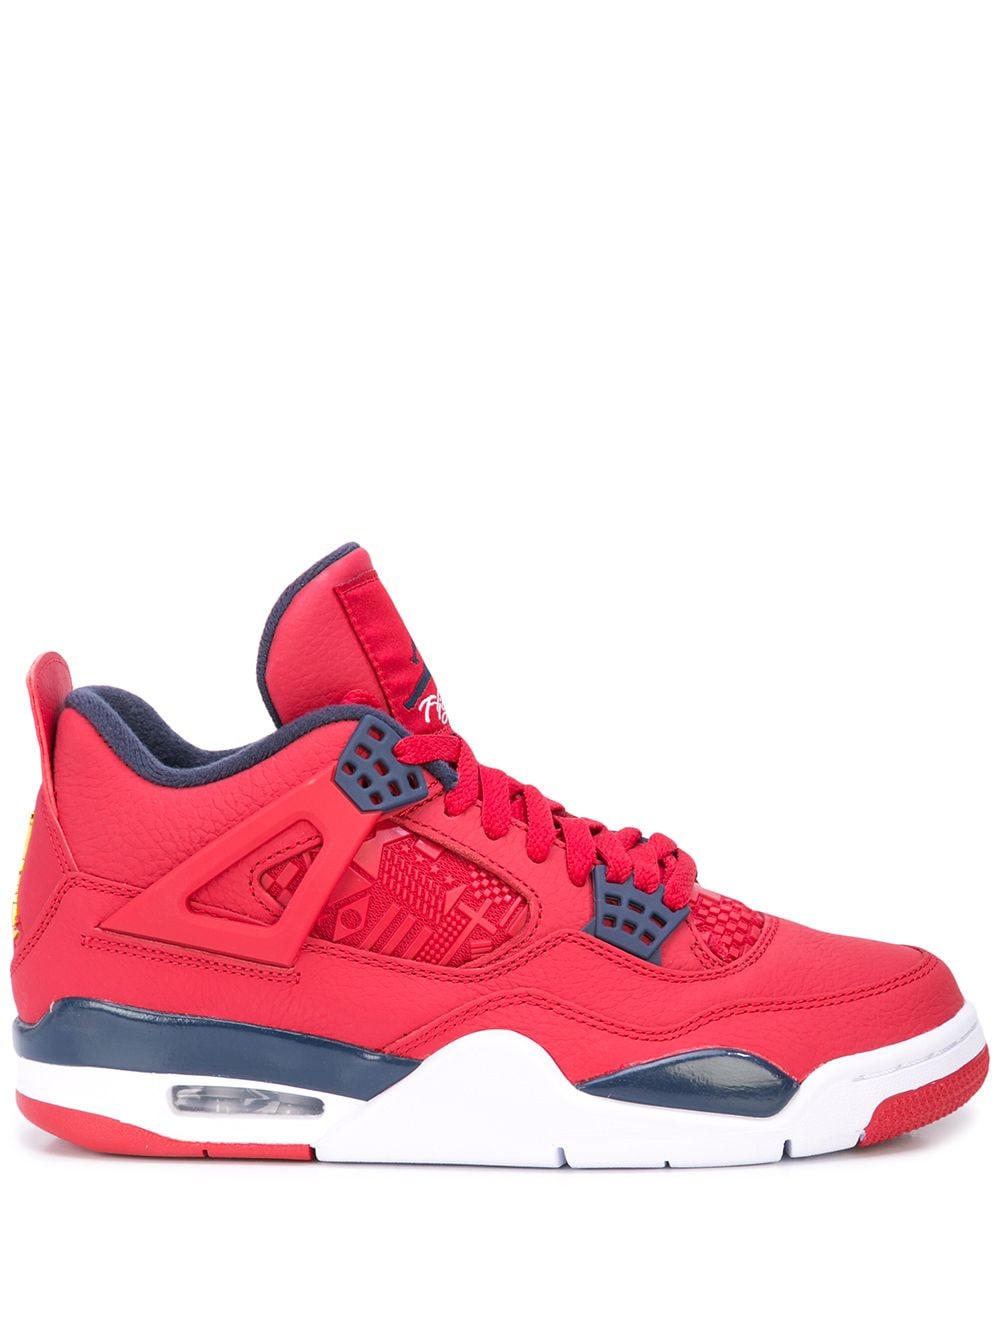 Jordan Air Jordan 4 Retro SE "Fiba" sneakers - Red